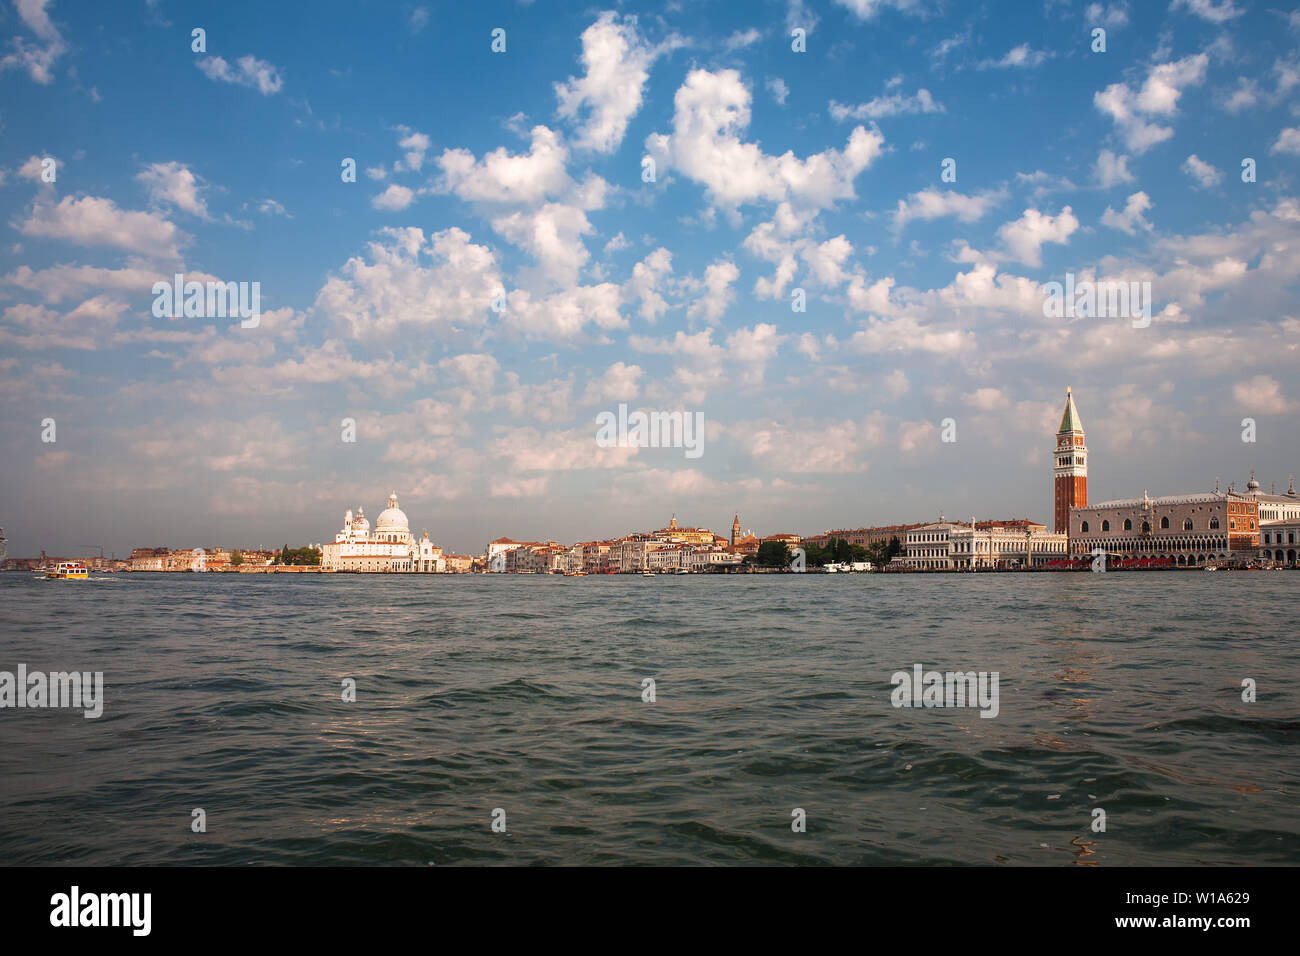 Arrival in Venice by sea: San Marco, Punta della Dogana, Canale Grande, Campanile di San Marco, and the Palazzo Ducale, Venice, Italy Stock Photo